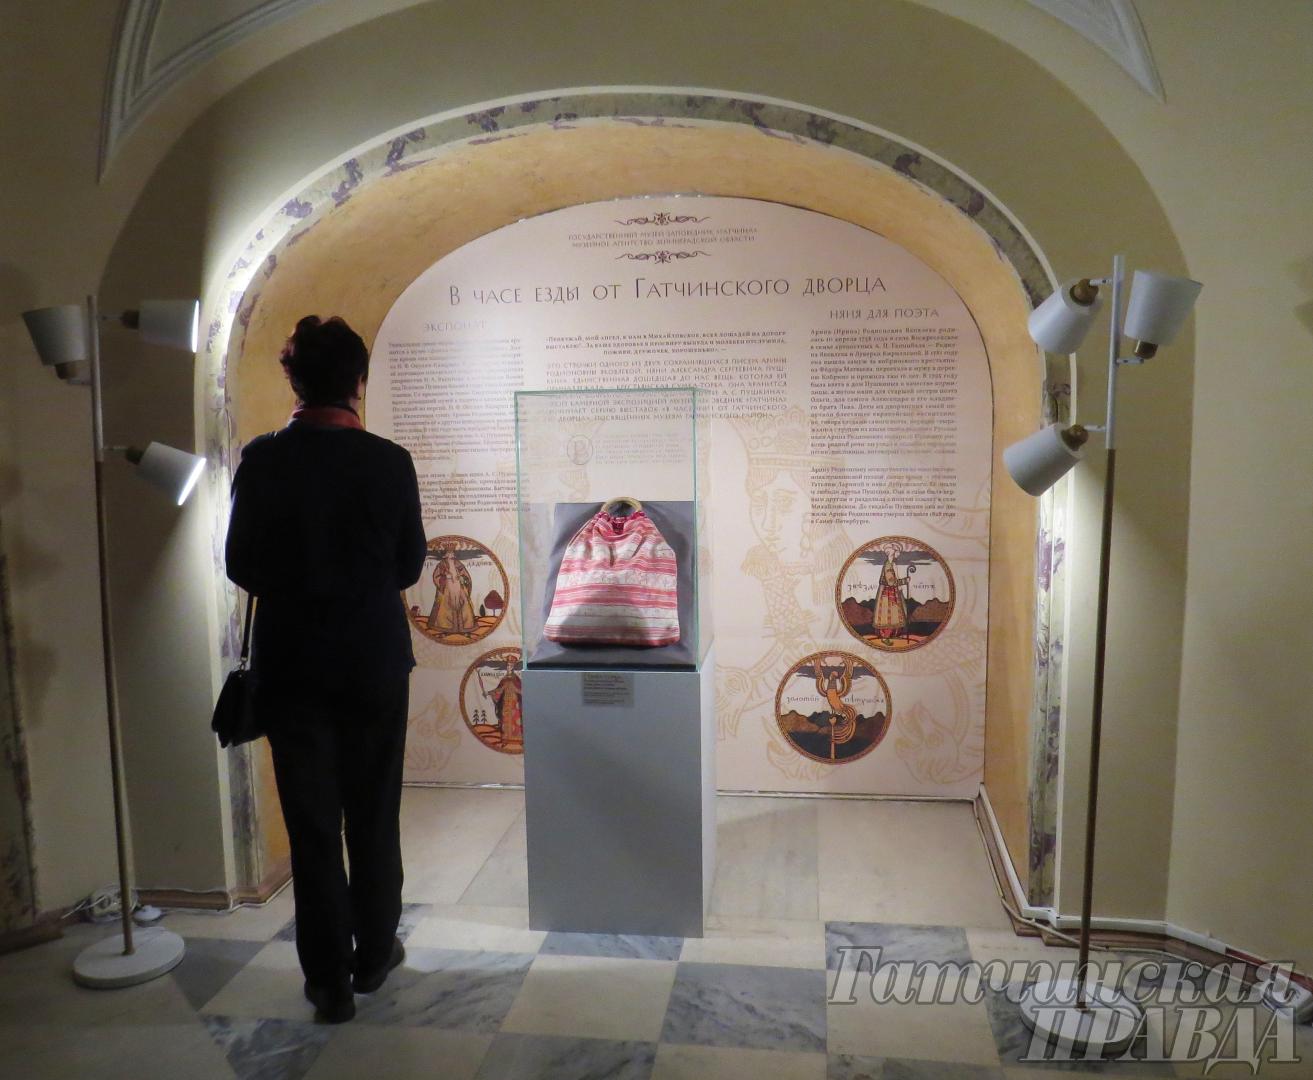 Торба няни Пушкина и буддийская ца-ца представлены в Гатчинском дворце